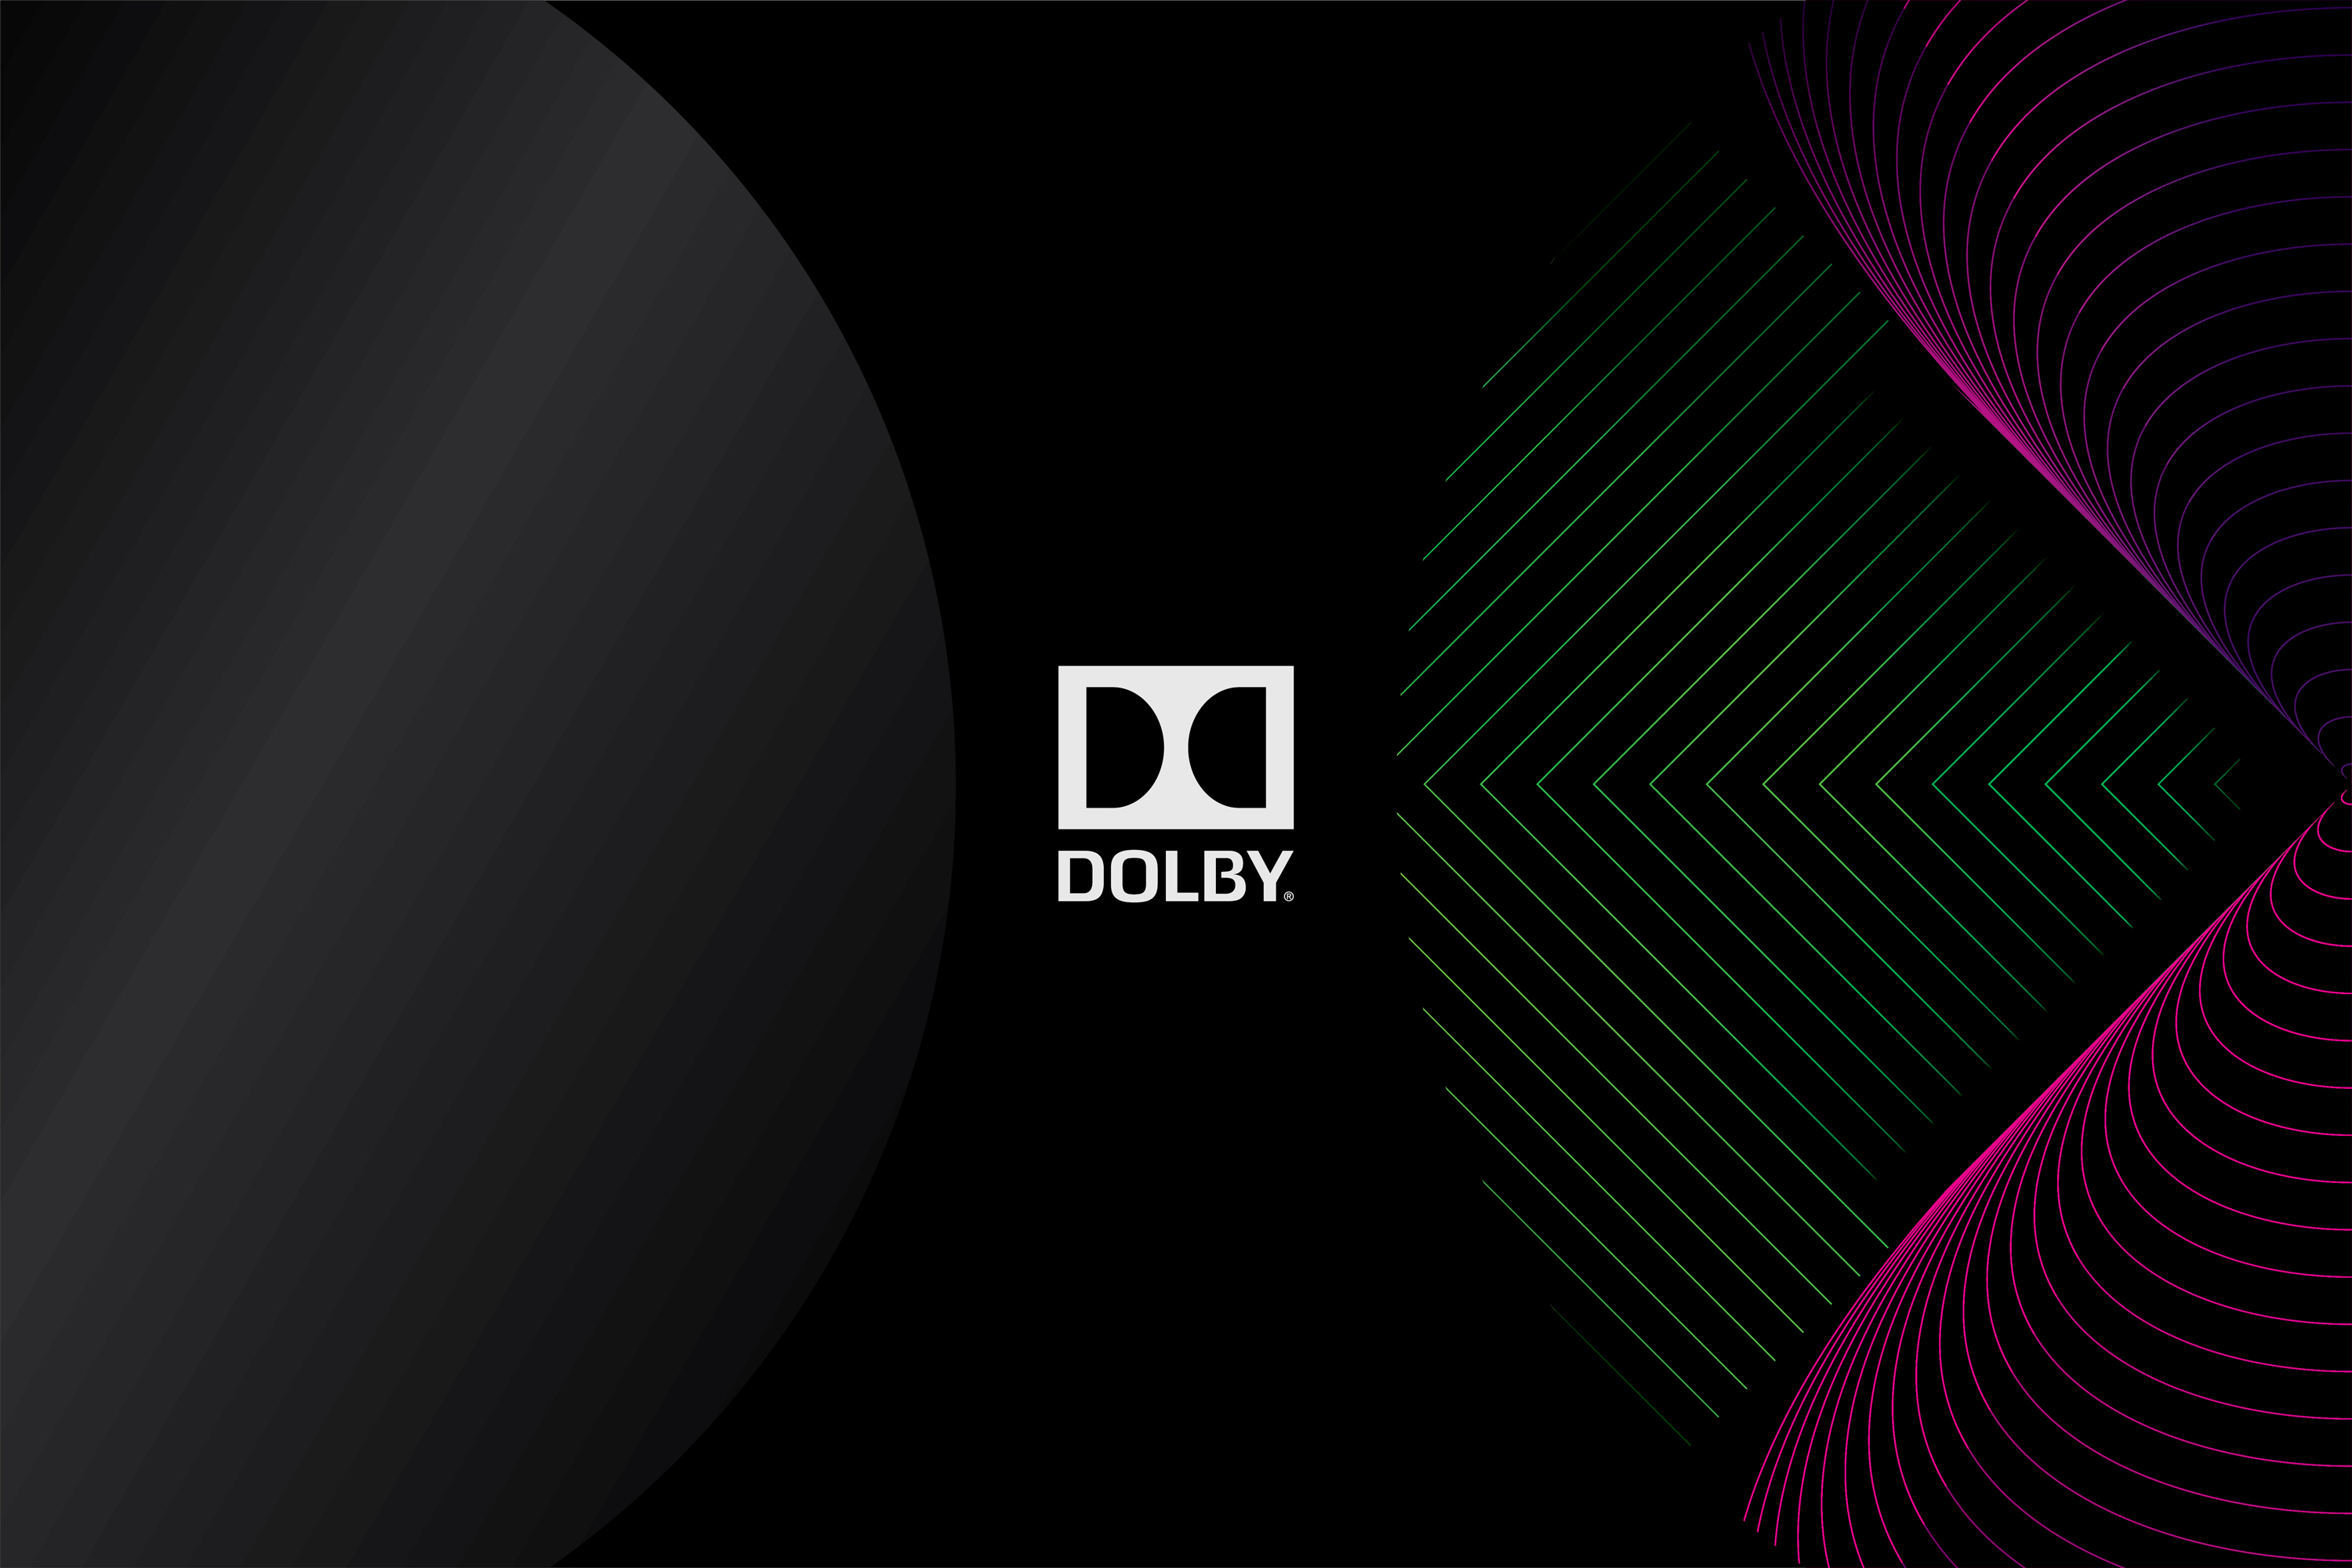 Dolby_Cinema_Double_D.jpg